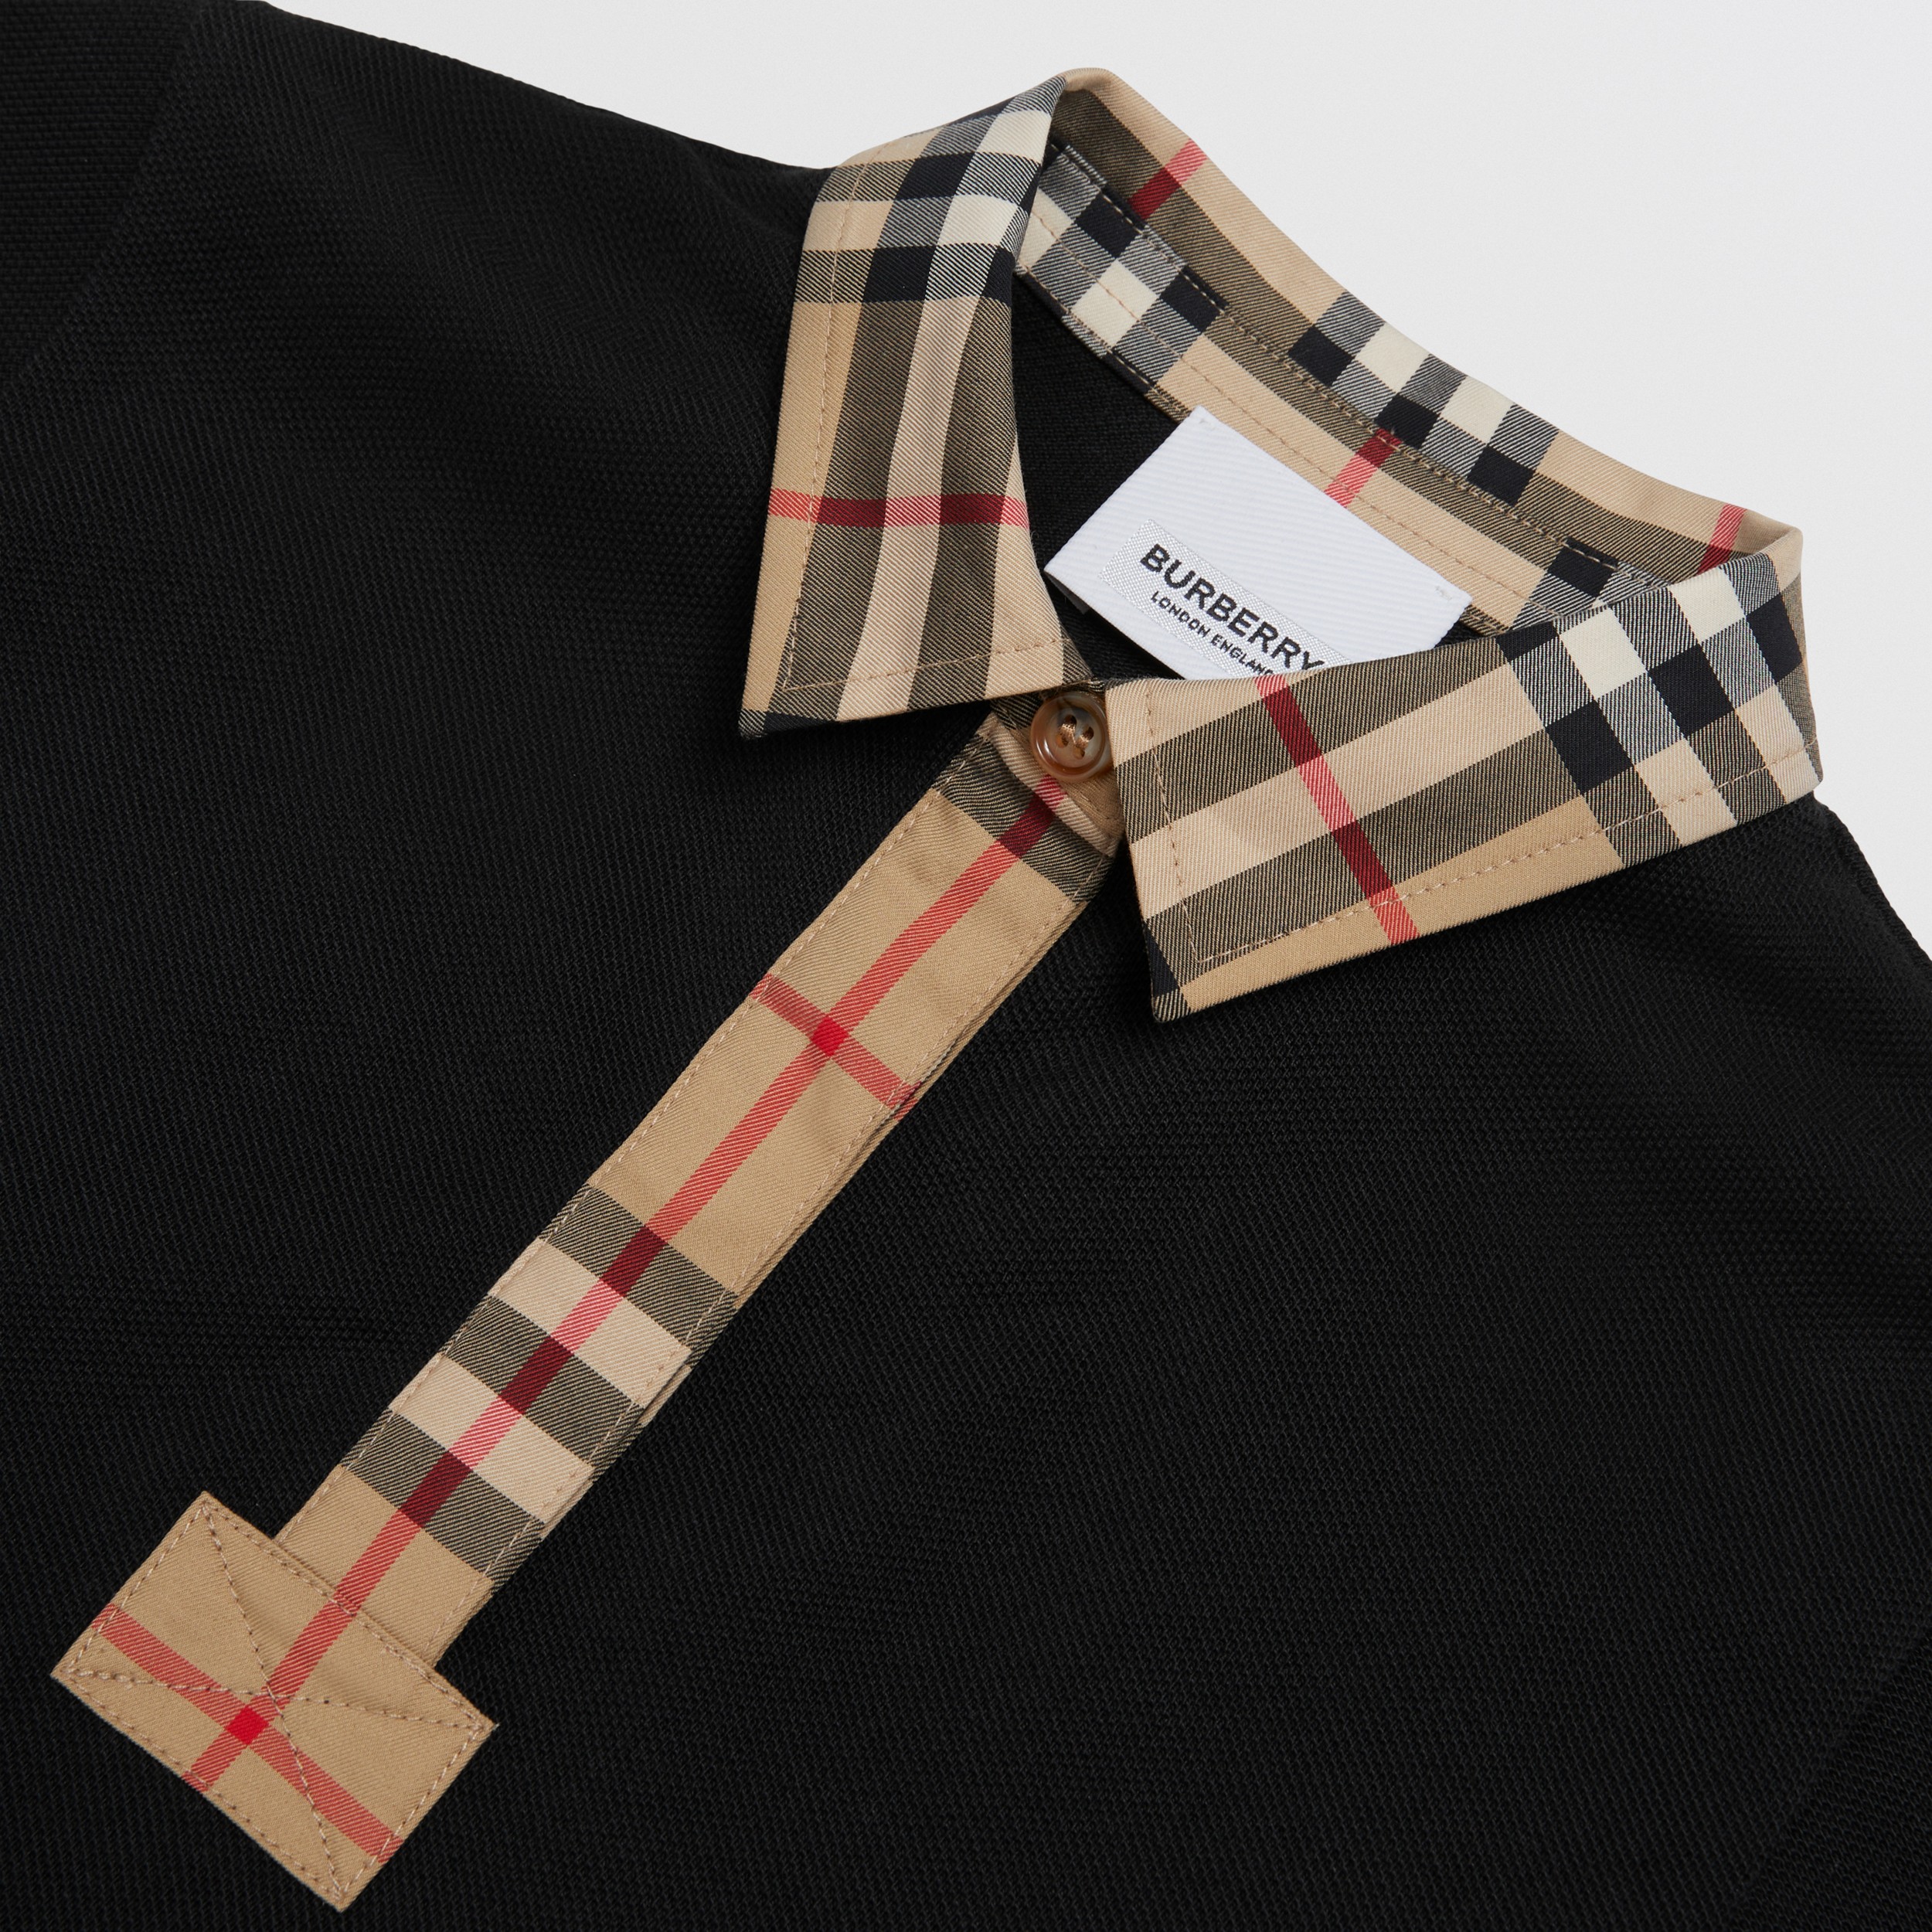 Vintage Check Trim Cotton Piqué Polo Shirt Dress in Black - Children | Burberry® Official - 2